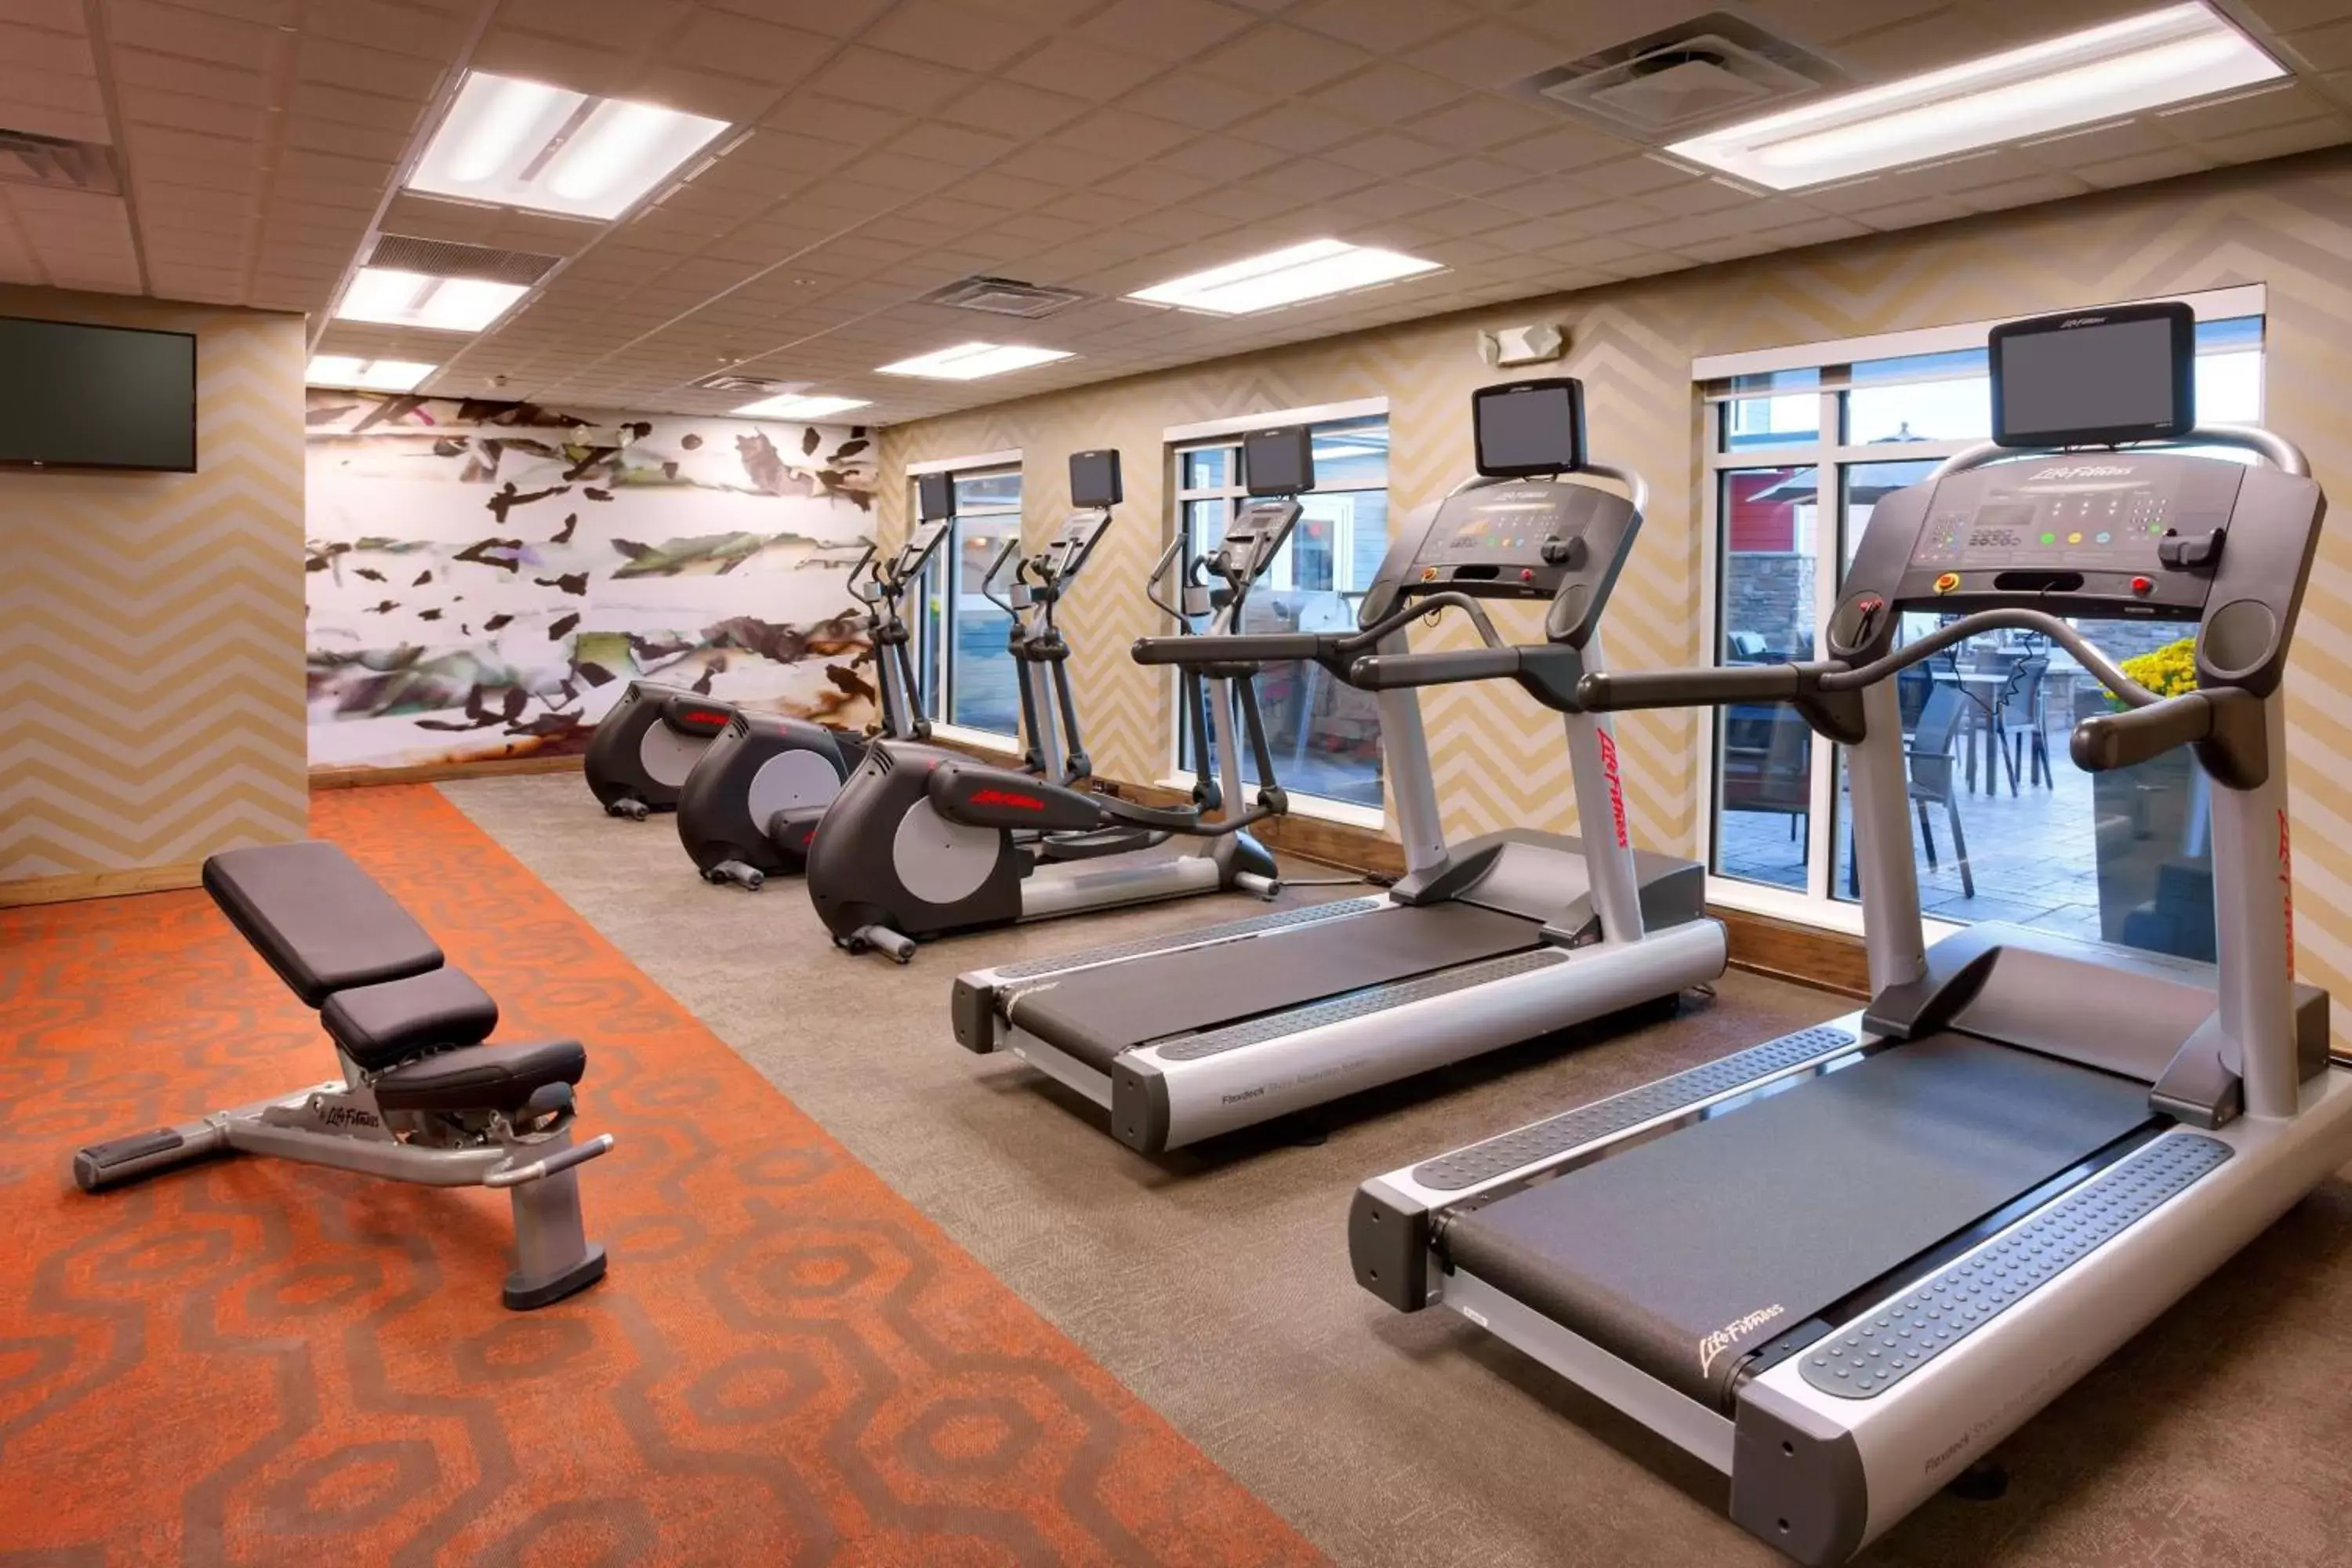 Fitness centre/facilities, Fitness Center/Facilities in Residence Inn by Marriott Casper